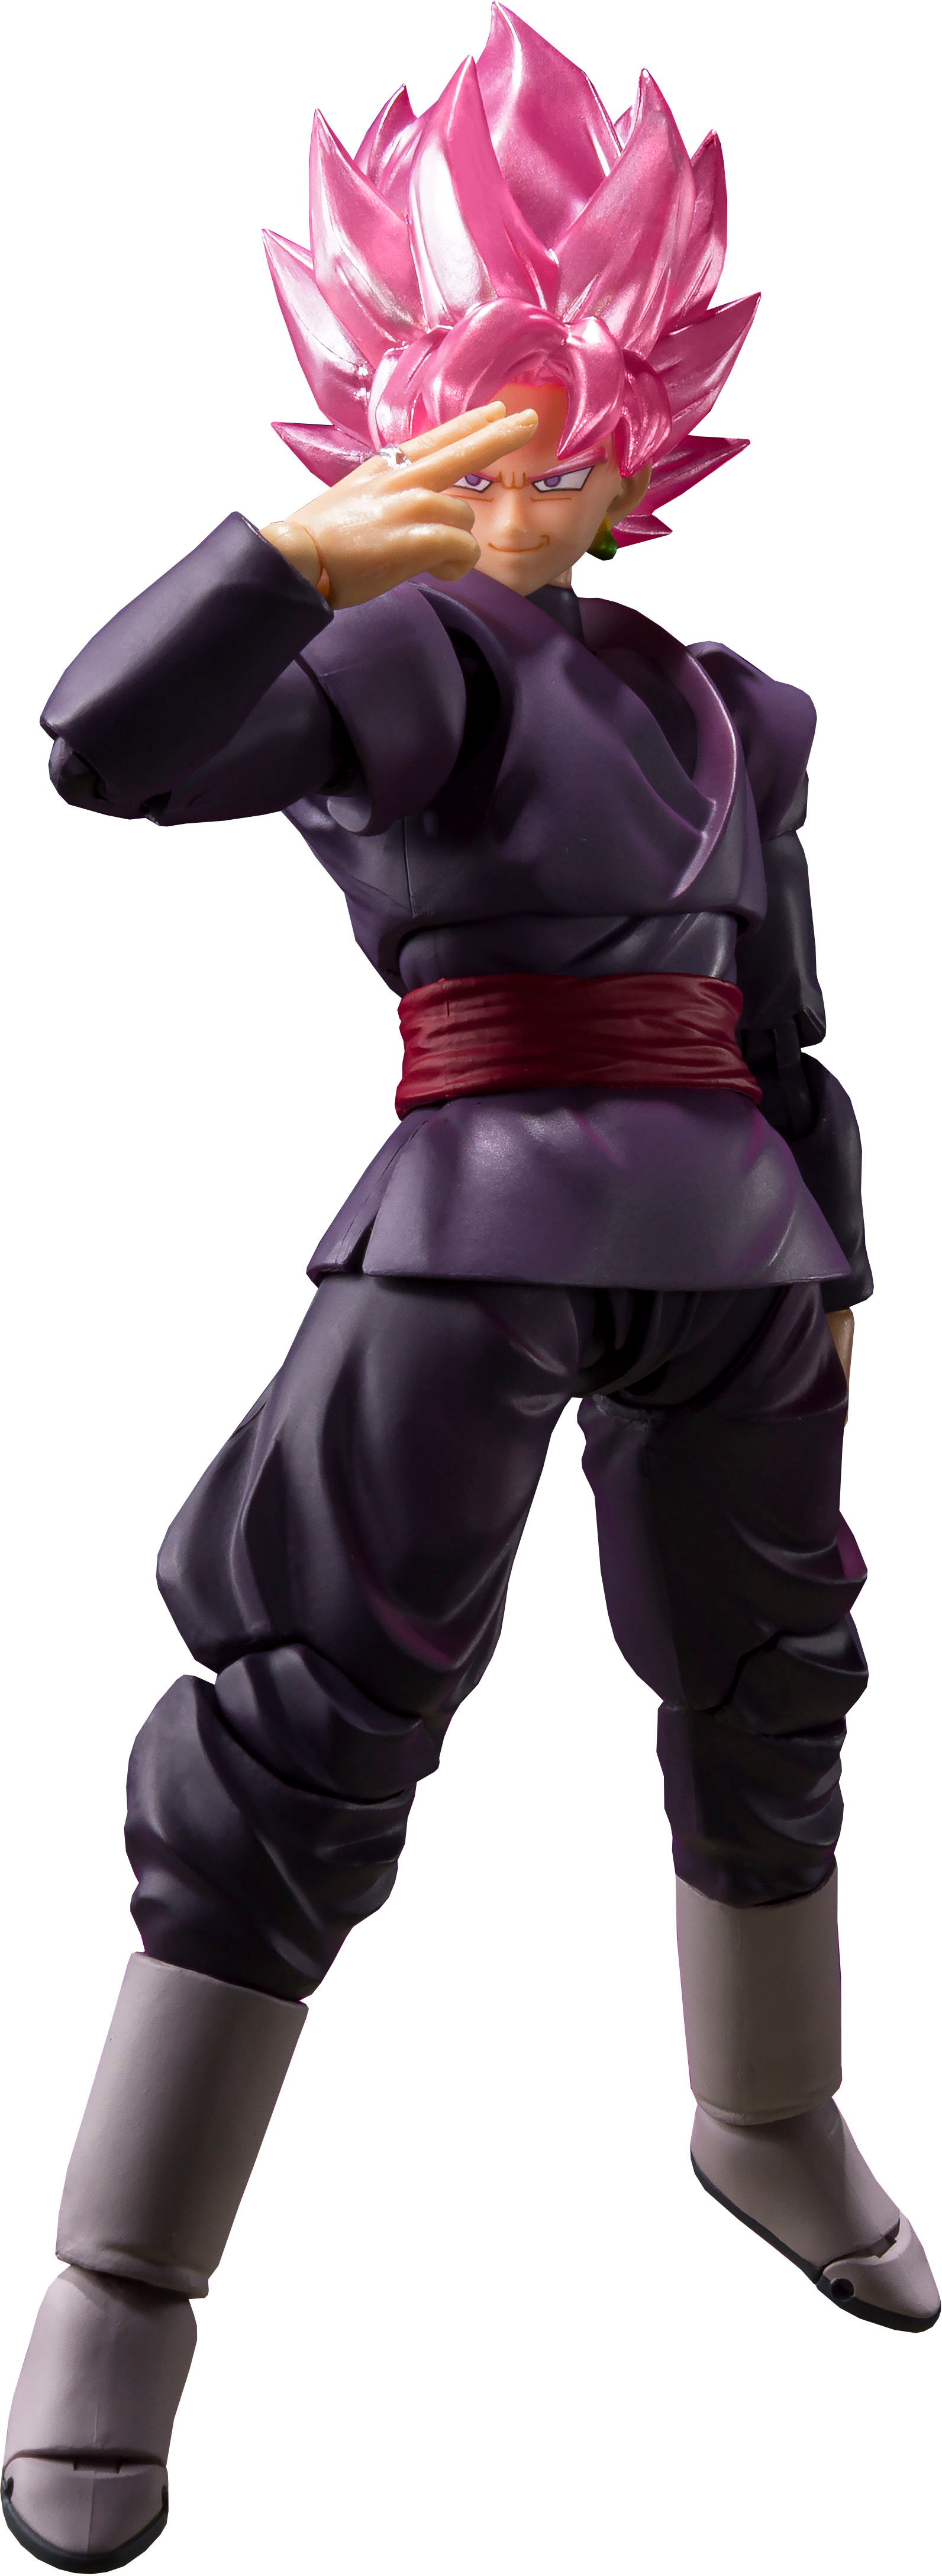 TAMASHII NATIONS Goku Black Super Saiyan Rose-, Bandai Spirits